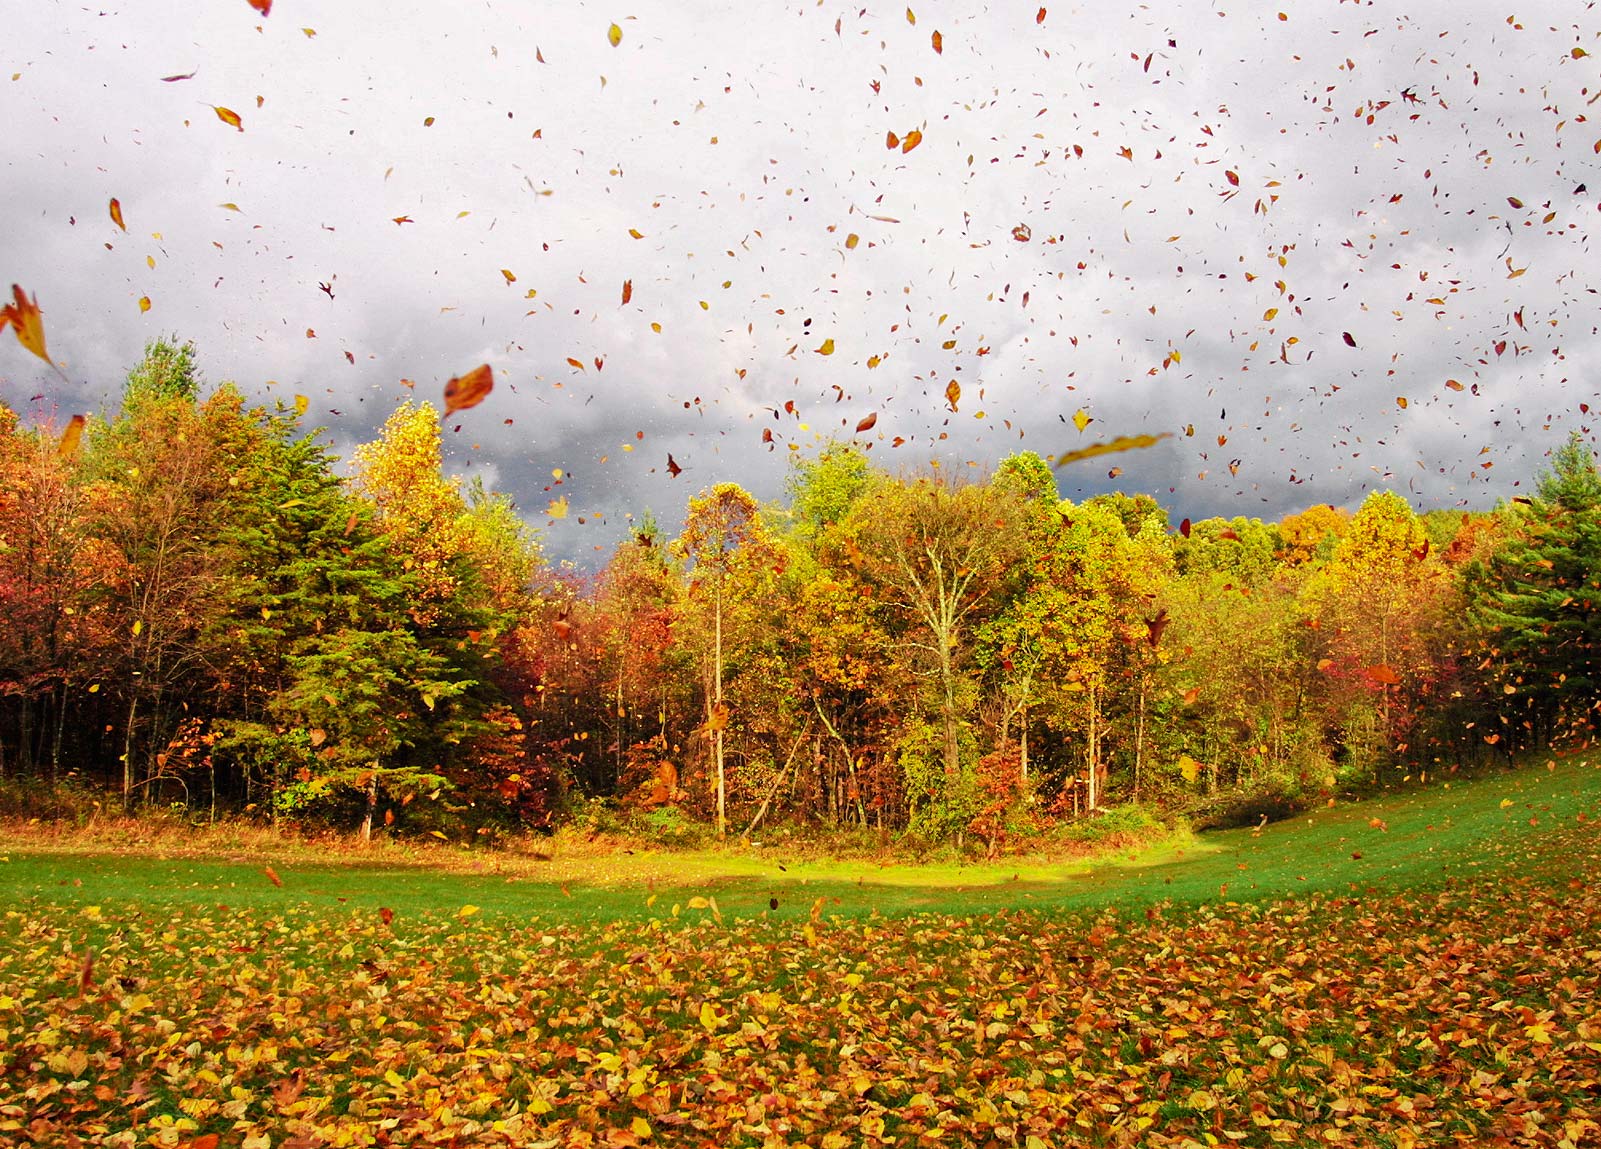 Осенний Ветер Фото — Красивое Фото